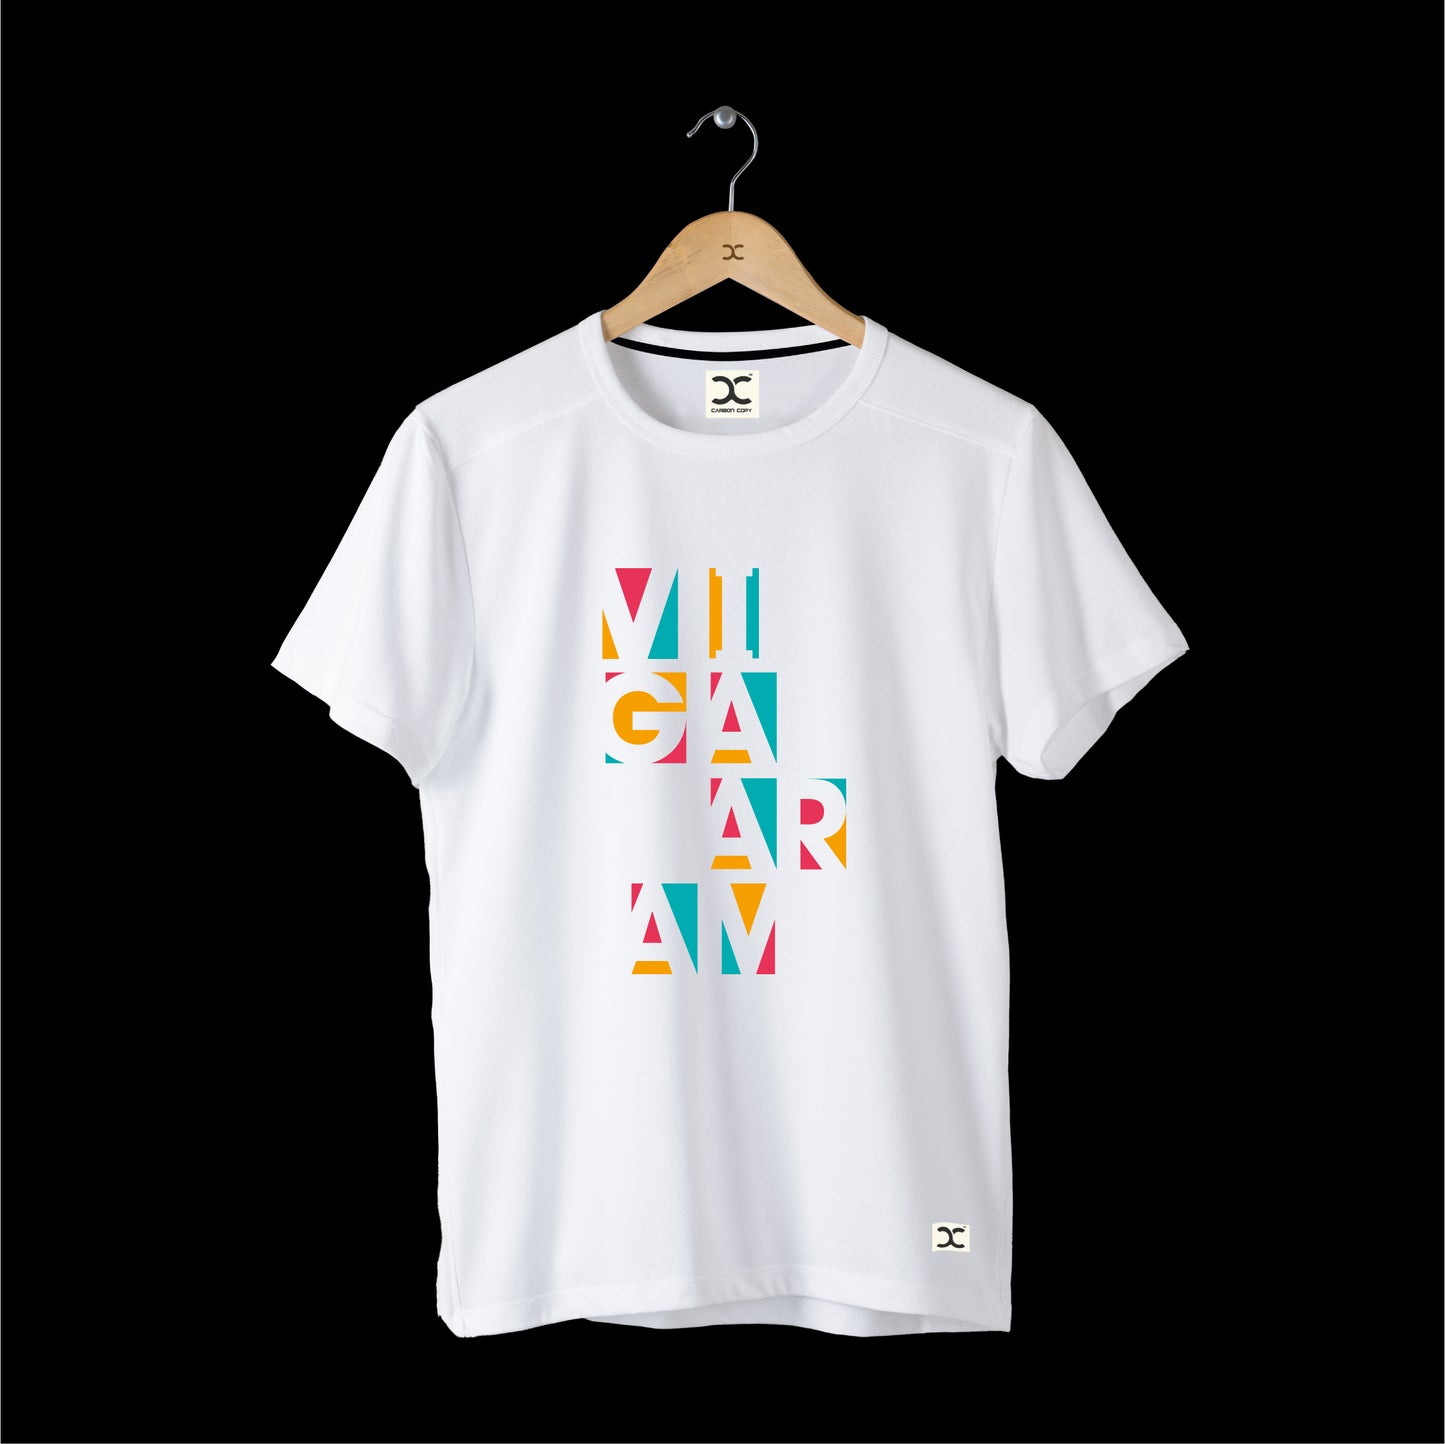 Vigaaram | CARBON-COPY Premium Smart-Fit l Unisex T-Shirt I White T-Shirt